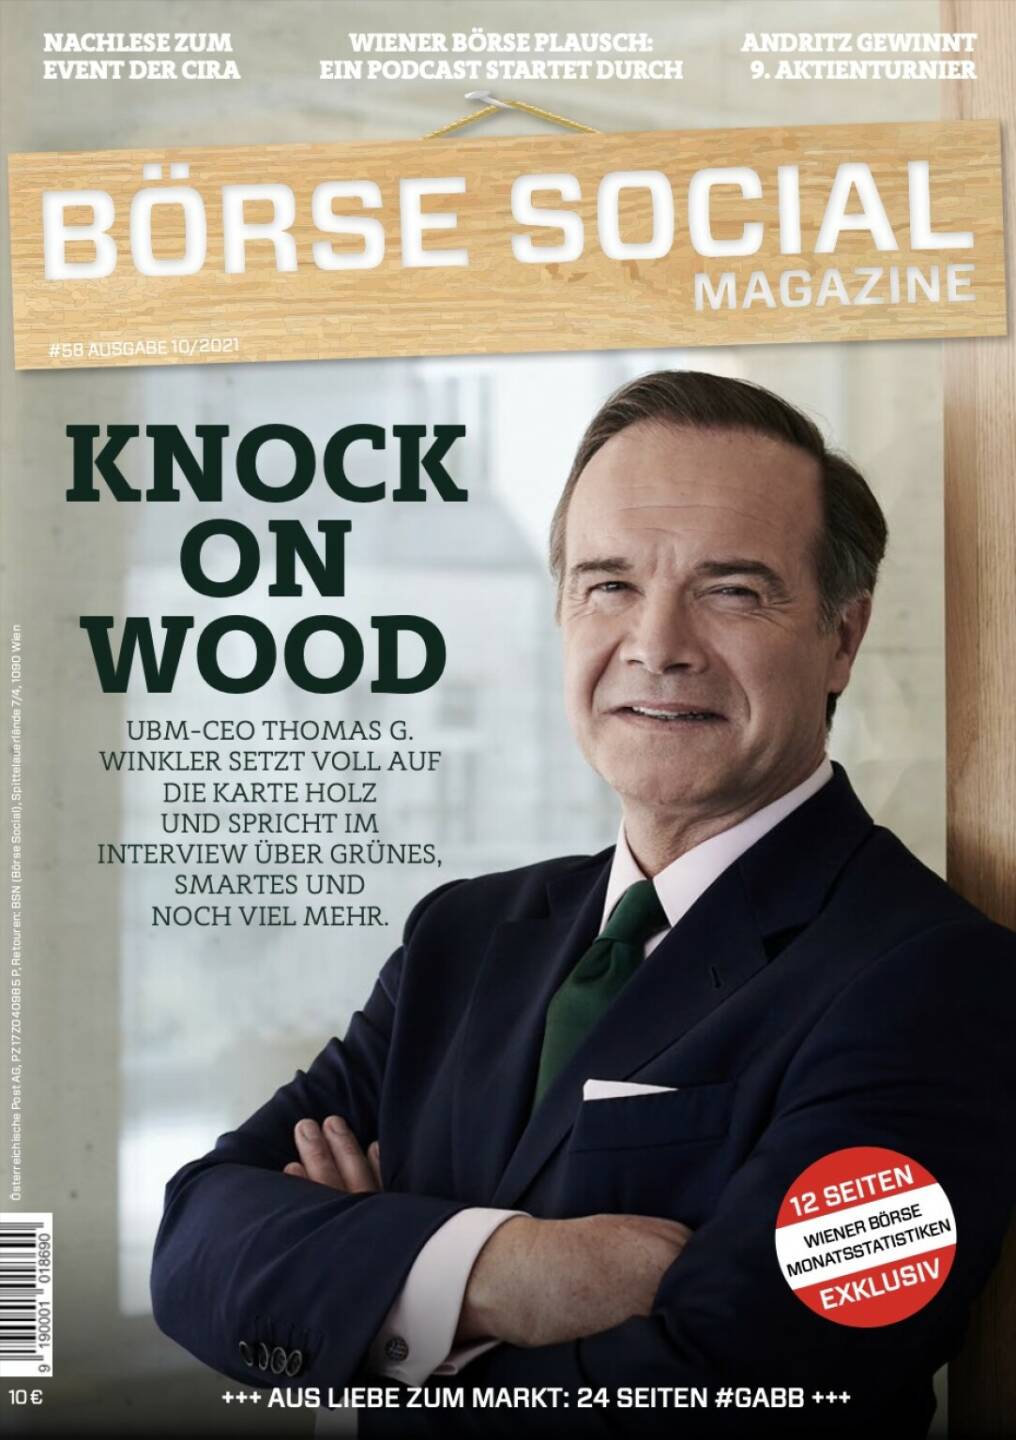 Magazine #58 - Knock on wood - UBM-CEO Thomas G. Winkler setzt voll auf die Karte Holz und spricht im Interview über Grünes, Smartes und noch viel mehr.